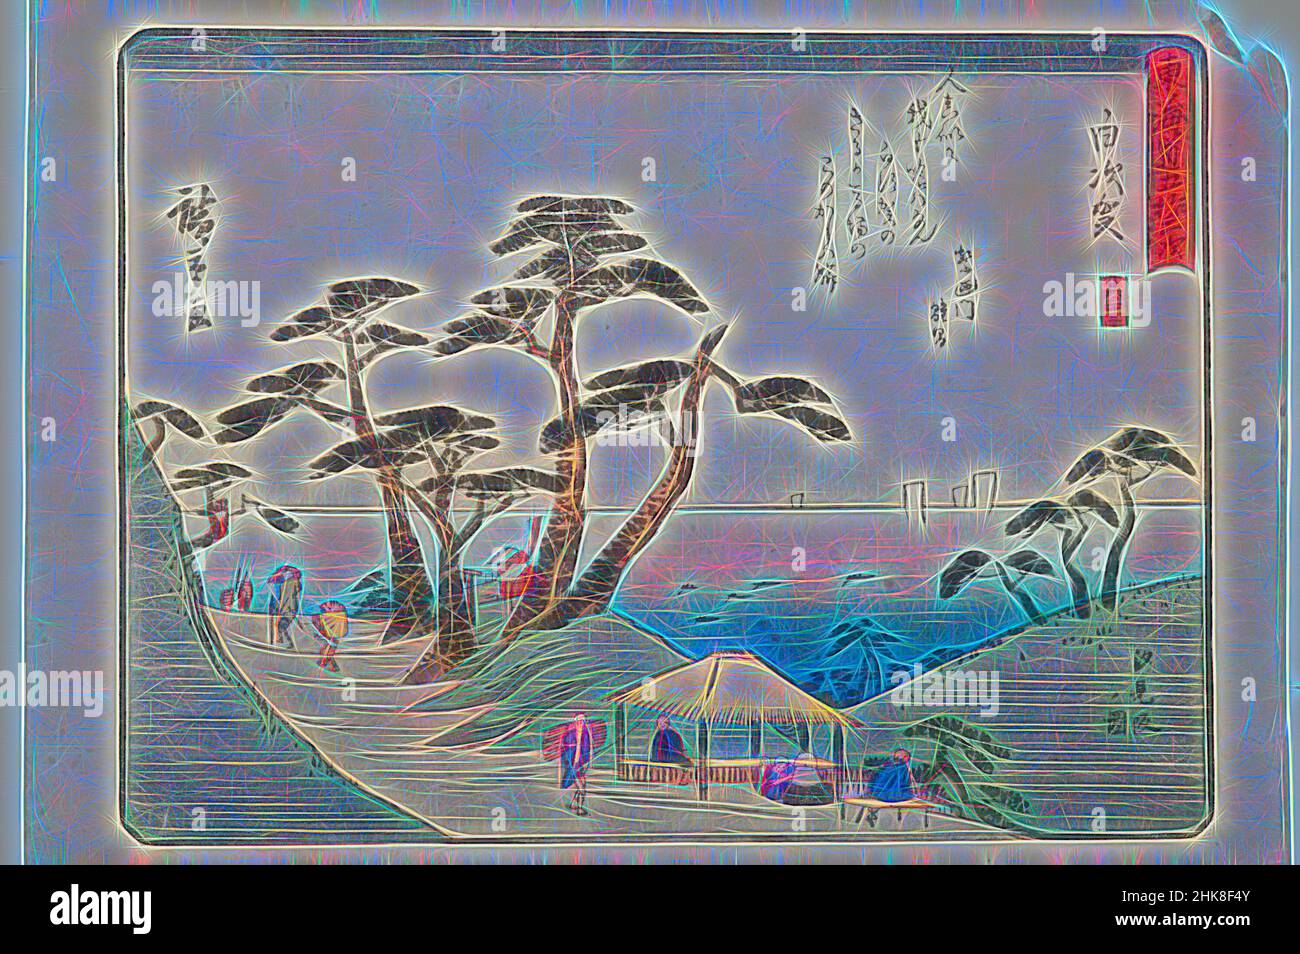 Inspiré par Tokaido gojo santsugi. Shirasuka. Plaque n° 33. De la série: Cinquante-trois stations de la route Tokaido., Utagawa Hiroshige, artiste, fin des années 1830, Japon, Utagawa (Ando) Hiroshige (1797-1858), est un peintre et une imprimerie de renom, que les autorités de l'époque saluent encore comme le dernier de la, réimaginé par Artotop. L'art classique réinventé avec une touche moderne. Conception de lumière chaleureuse et gaie, de luminosité et de rayonnement de lumière. La photographie s'inspire du surréalisme et du futurisme, embrassant l'énergie dynamique de la technologie moderne, du mouvement, de la vitesse et révolutionne la culture Banque D'Images